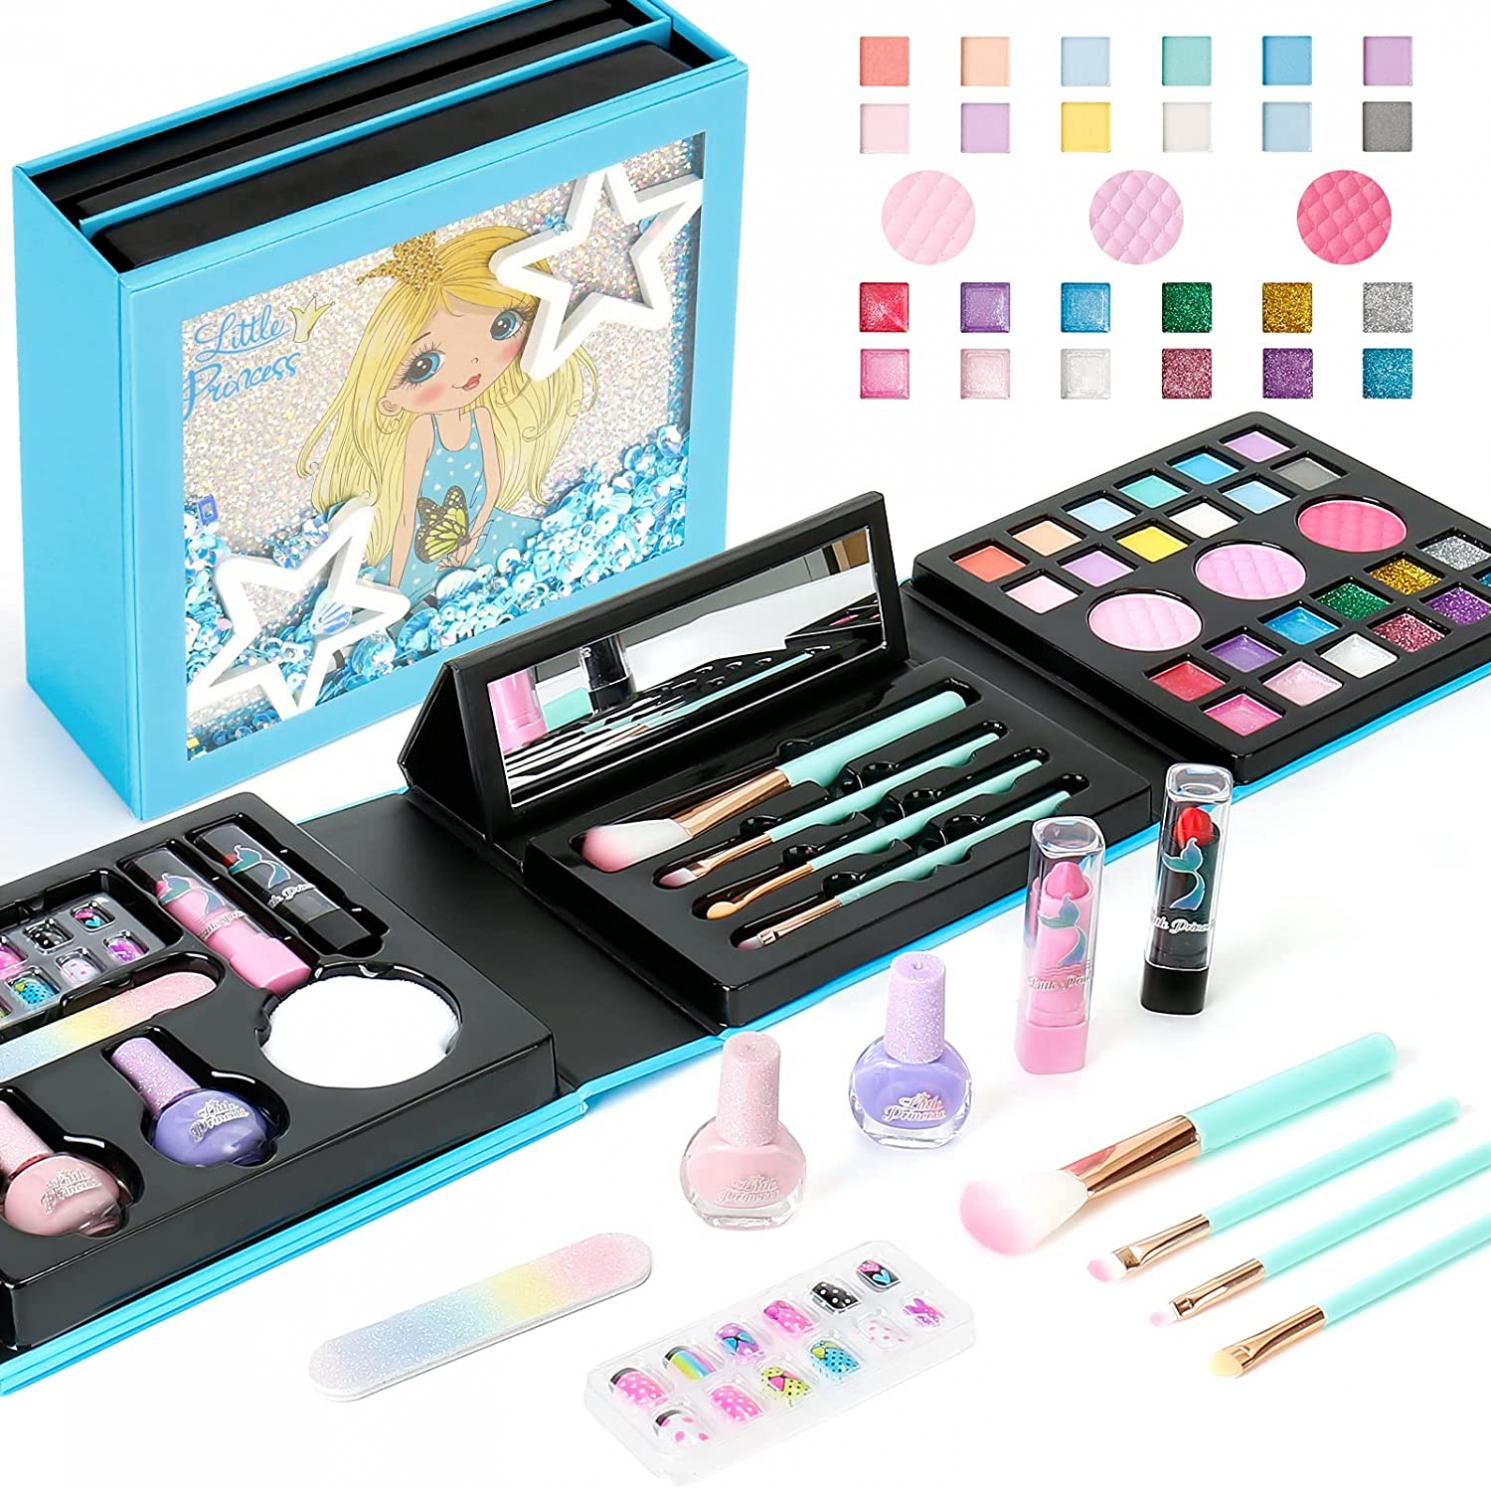 Kids Makeup Kit for Girls, Washable Princess Makeup Girl Toys Pretend Play Games Christmas Birthday Halloween Gift for Kids Age 5 6 7 8 9 10 11 12